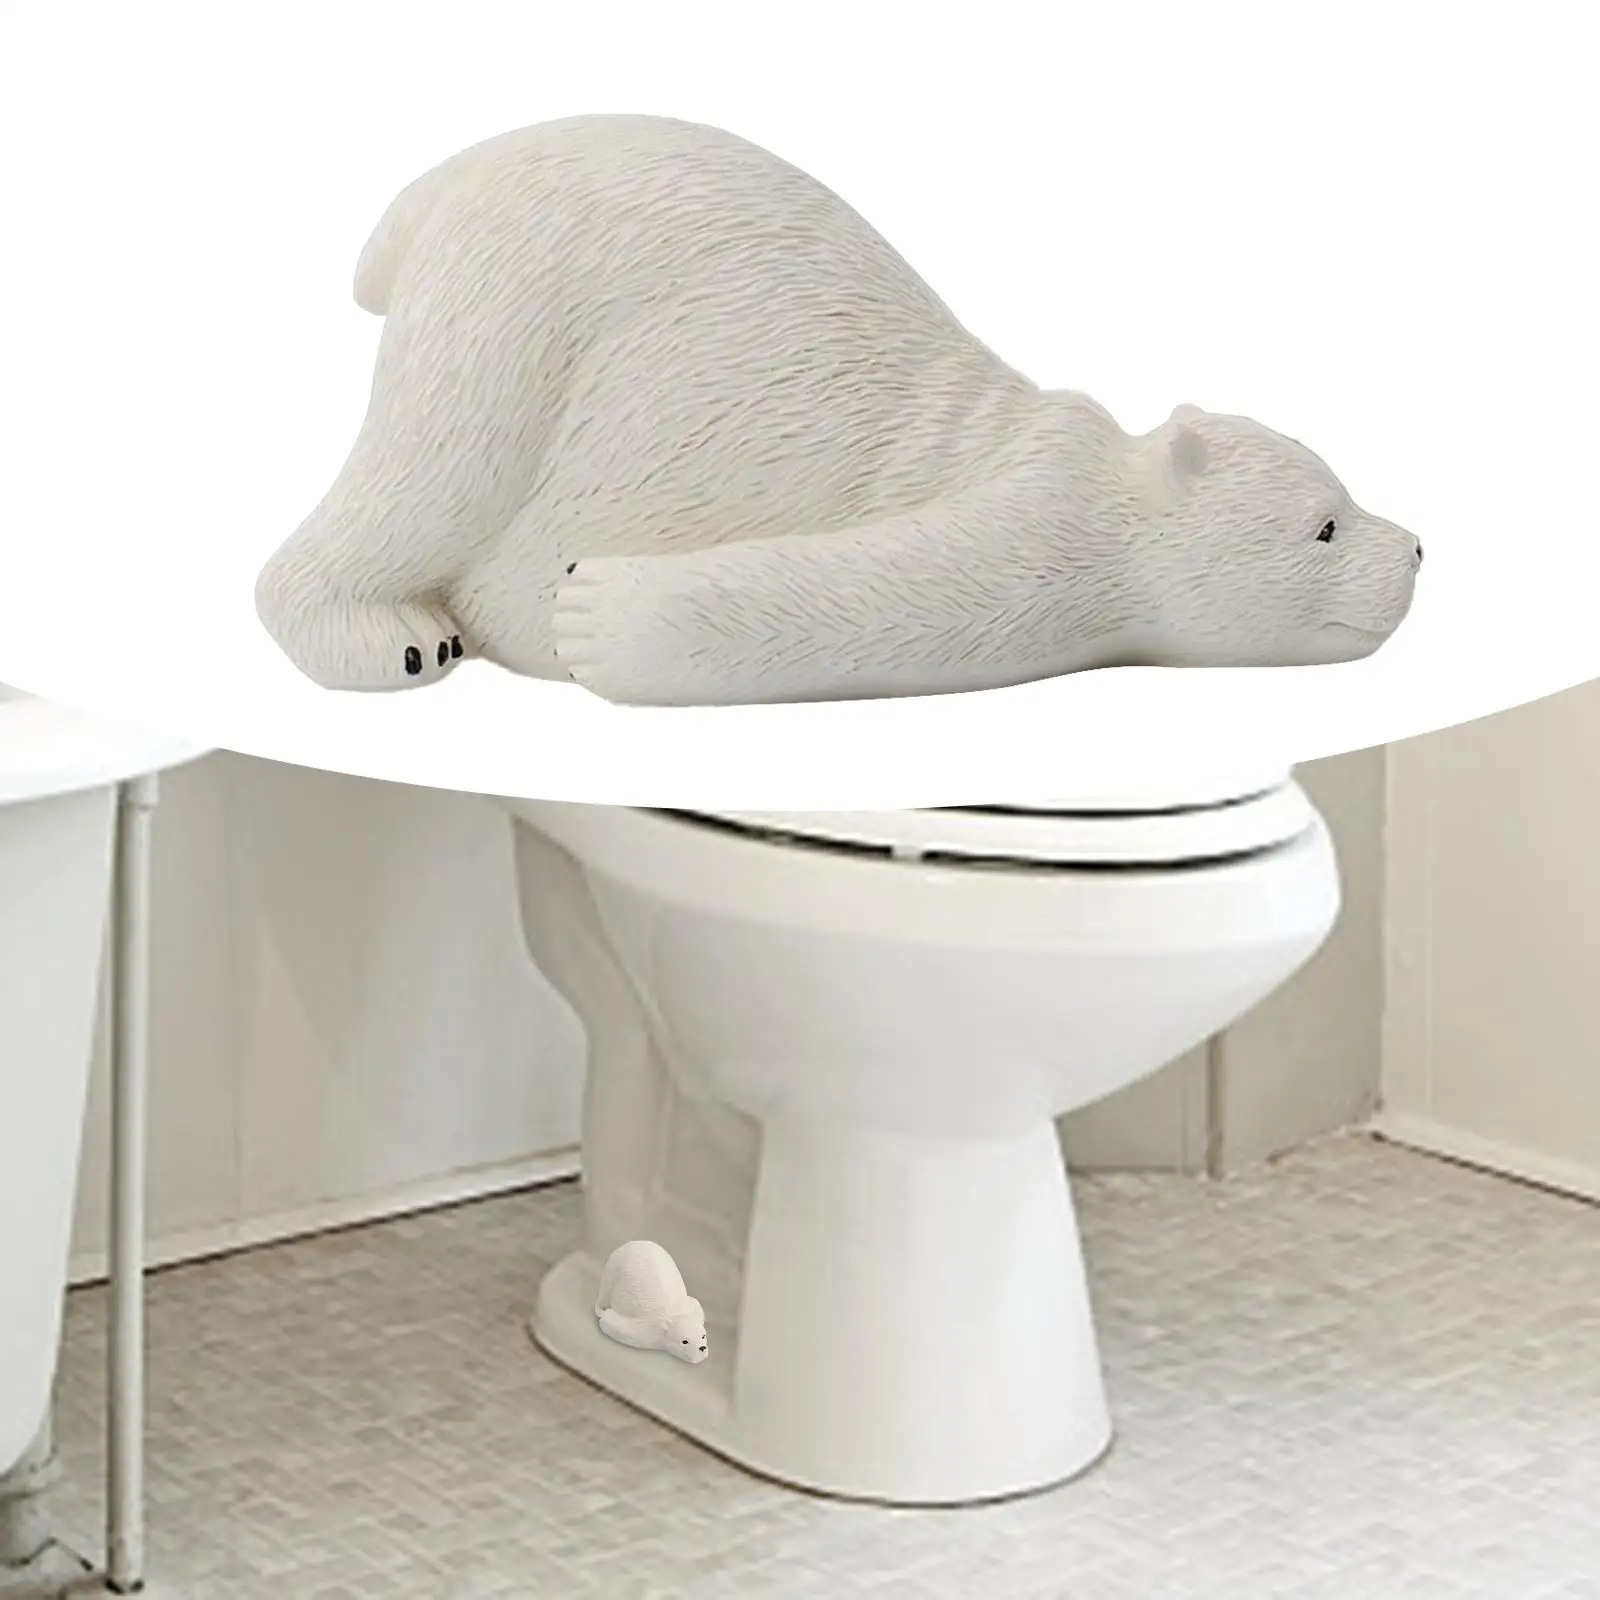 Toilet Bolt Cap Decoration Polar Bears Statue Toilet Floor Bolt Decor Toilet Replacement Parts Resin Ornament for Toliet Home